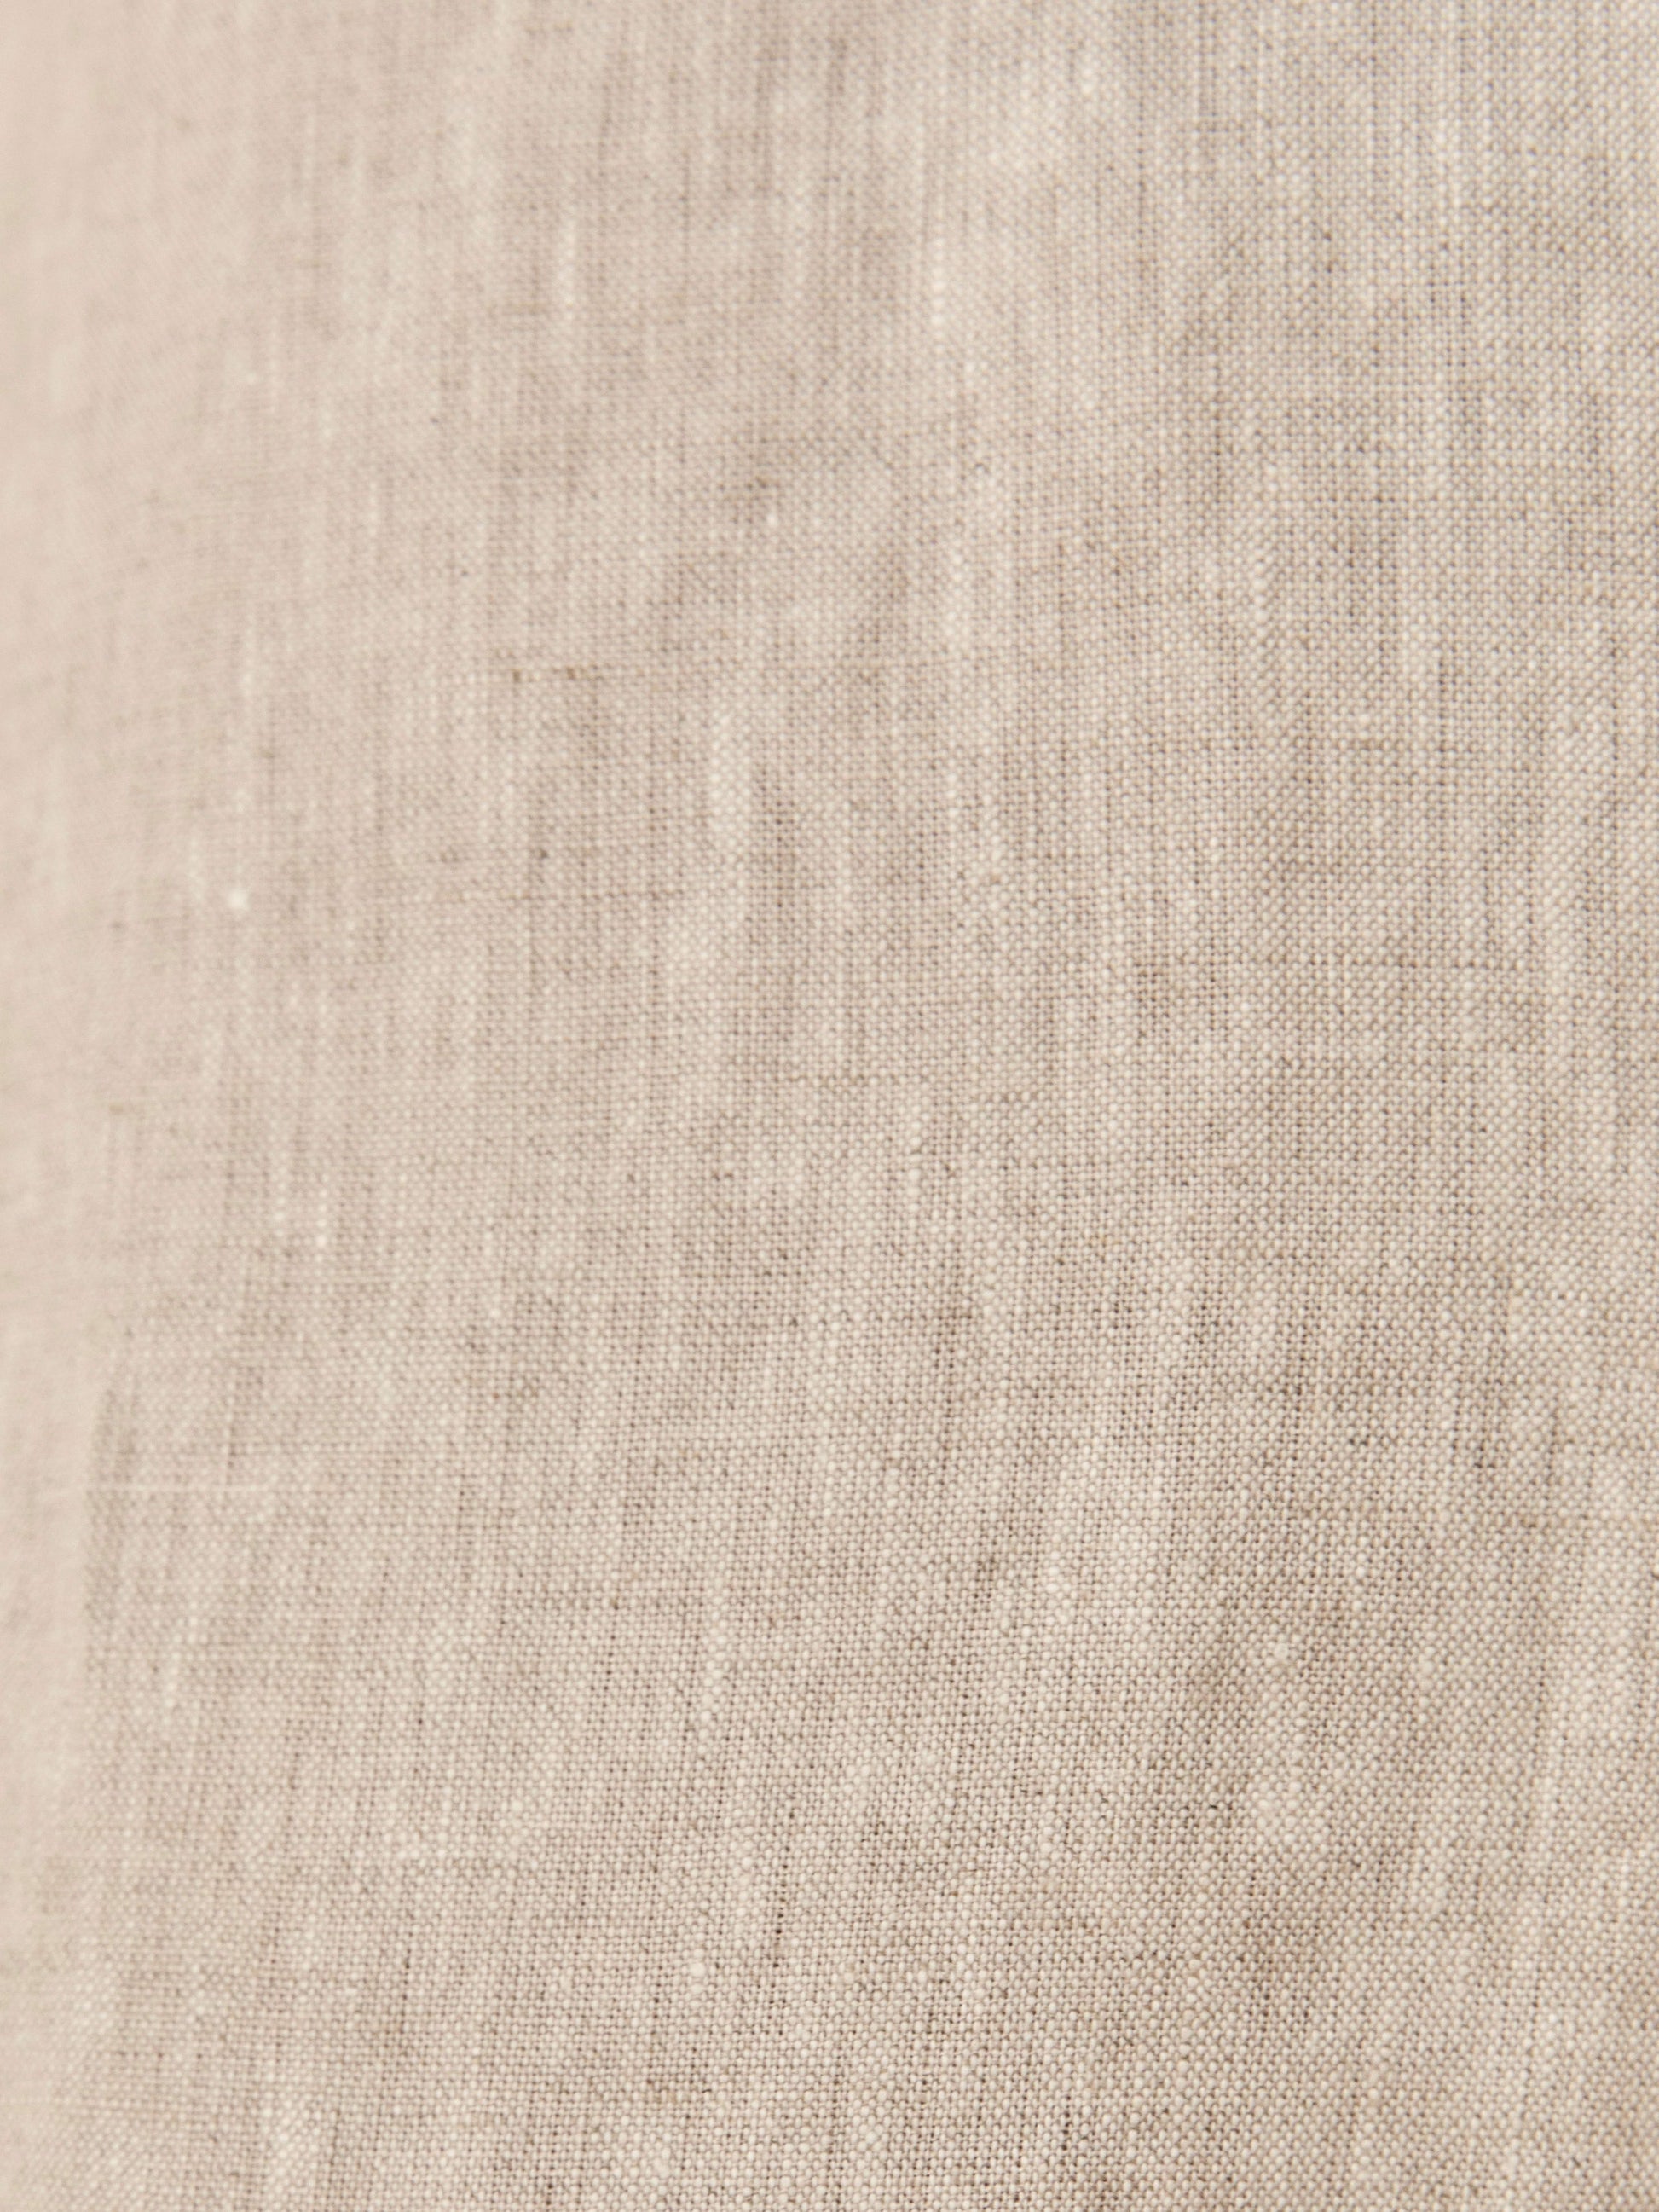 NTG Fad Linen cotton top-(Hand Made）